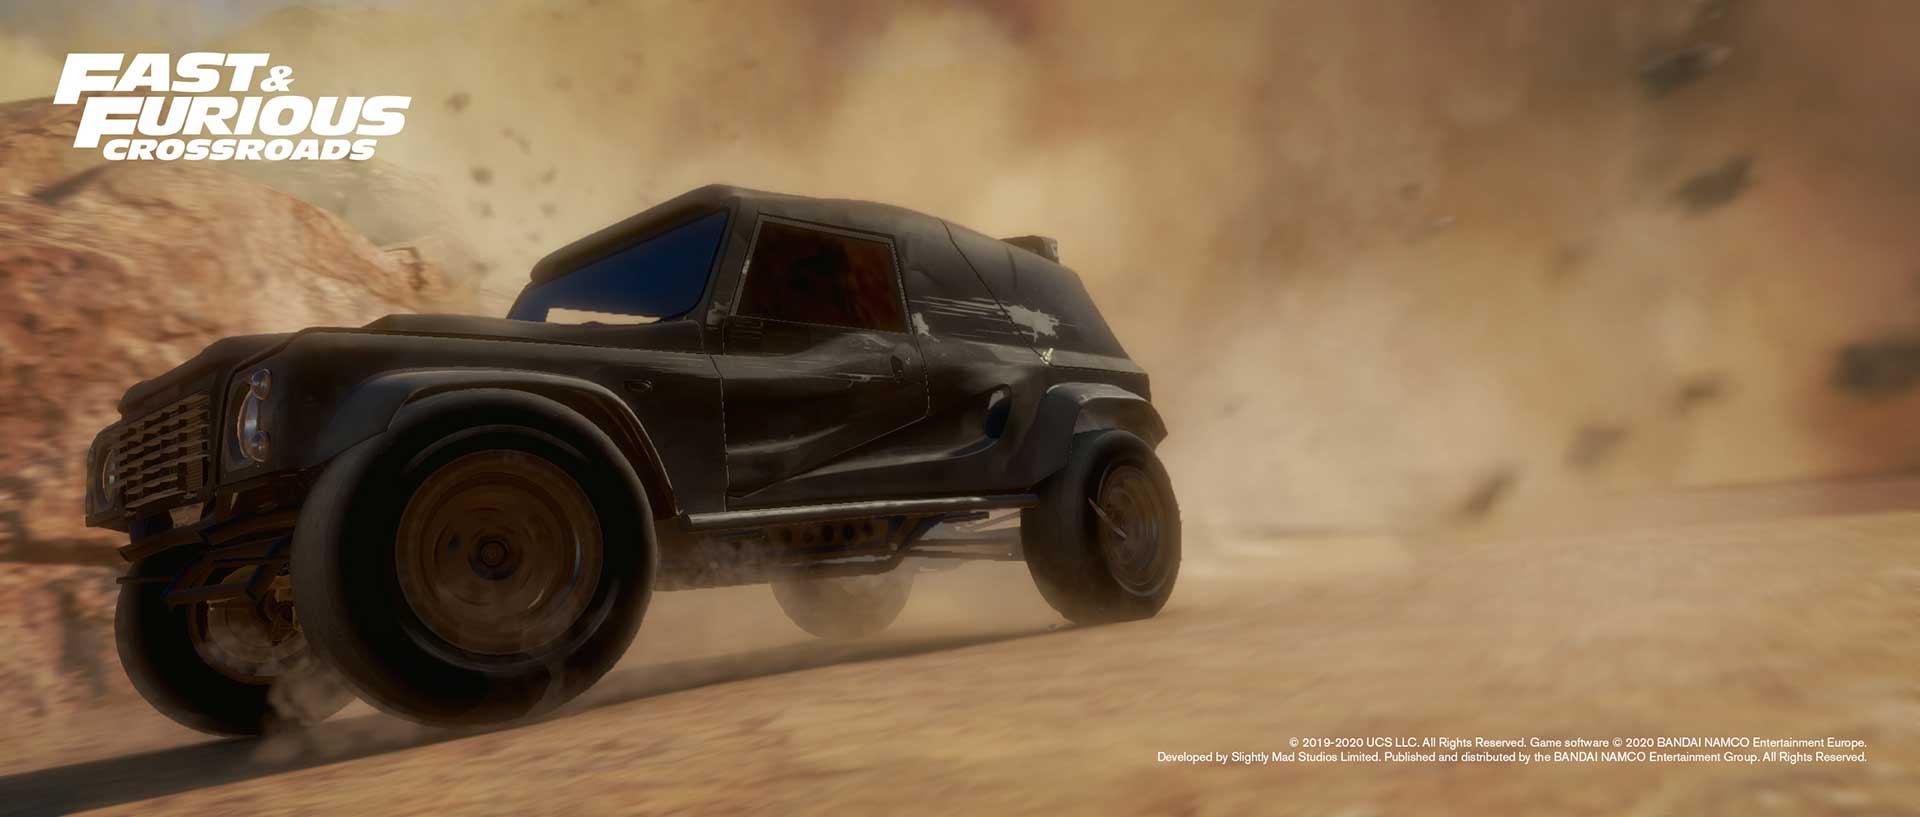 Fast & Furious Crossroads скриншот (фото)